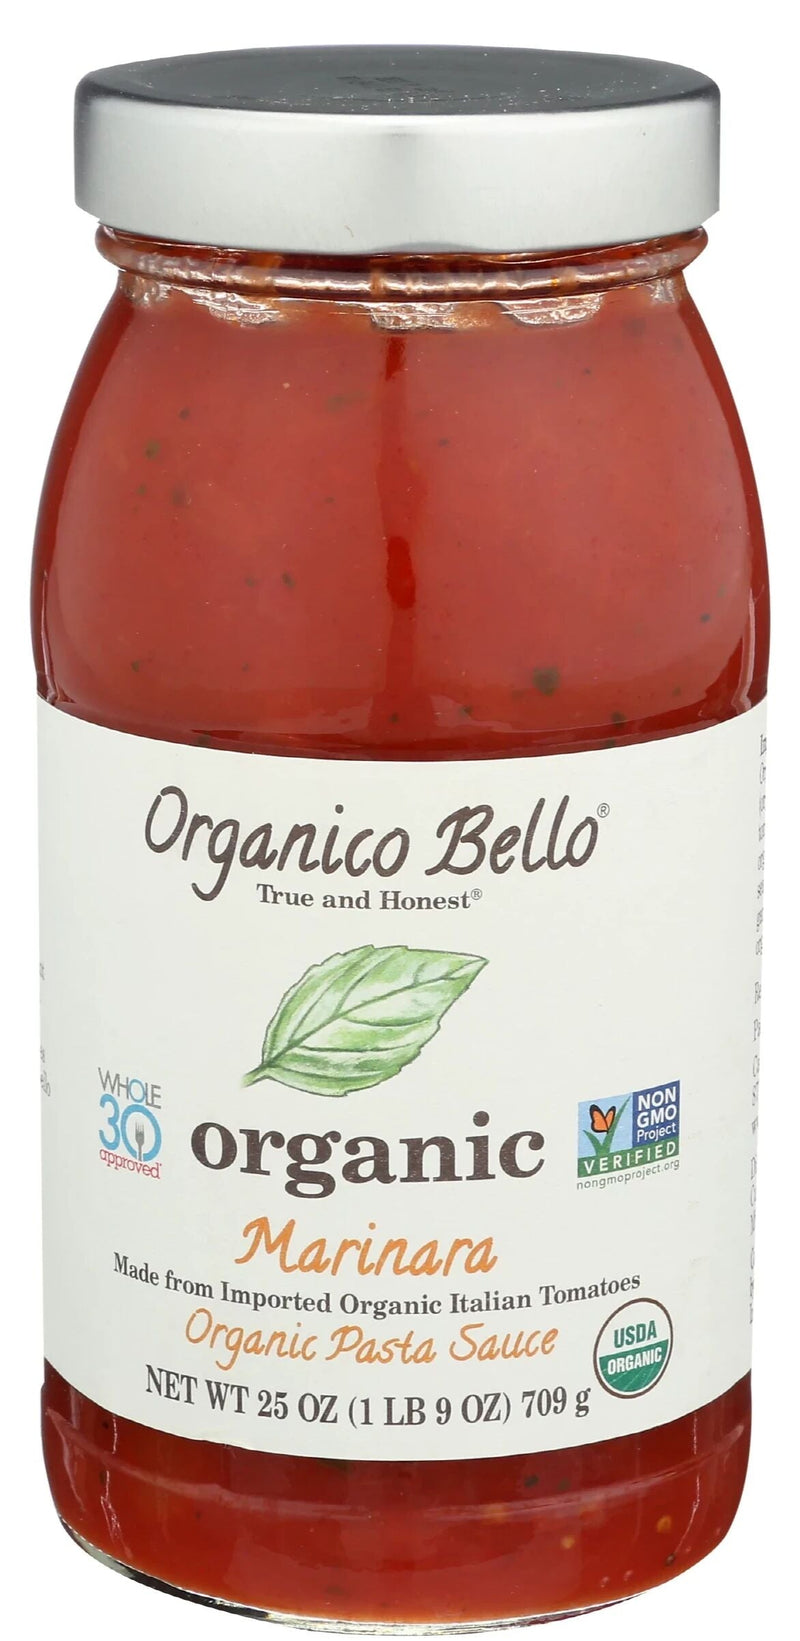 Order Organic Pizza Sauce Organico Bello